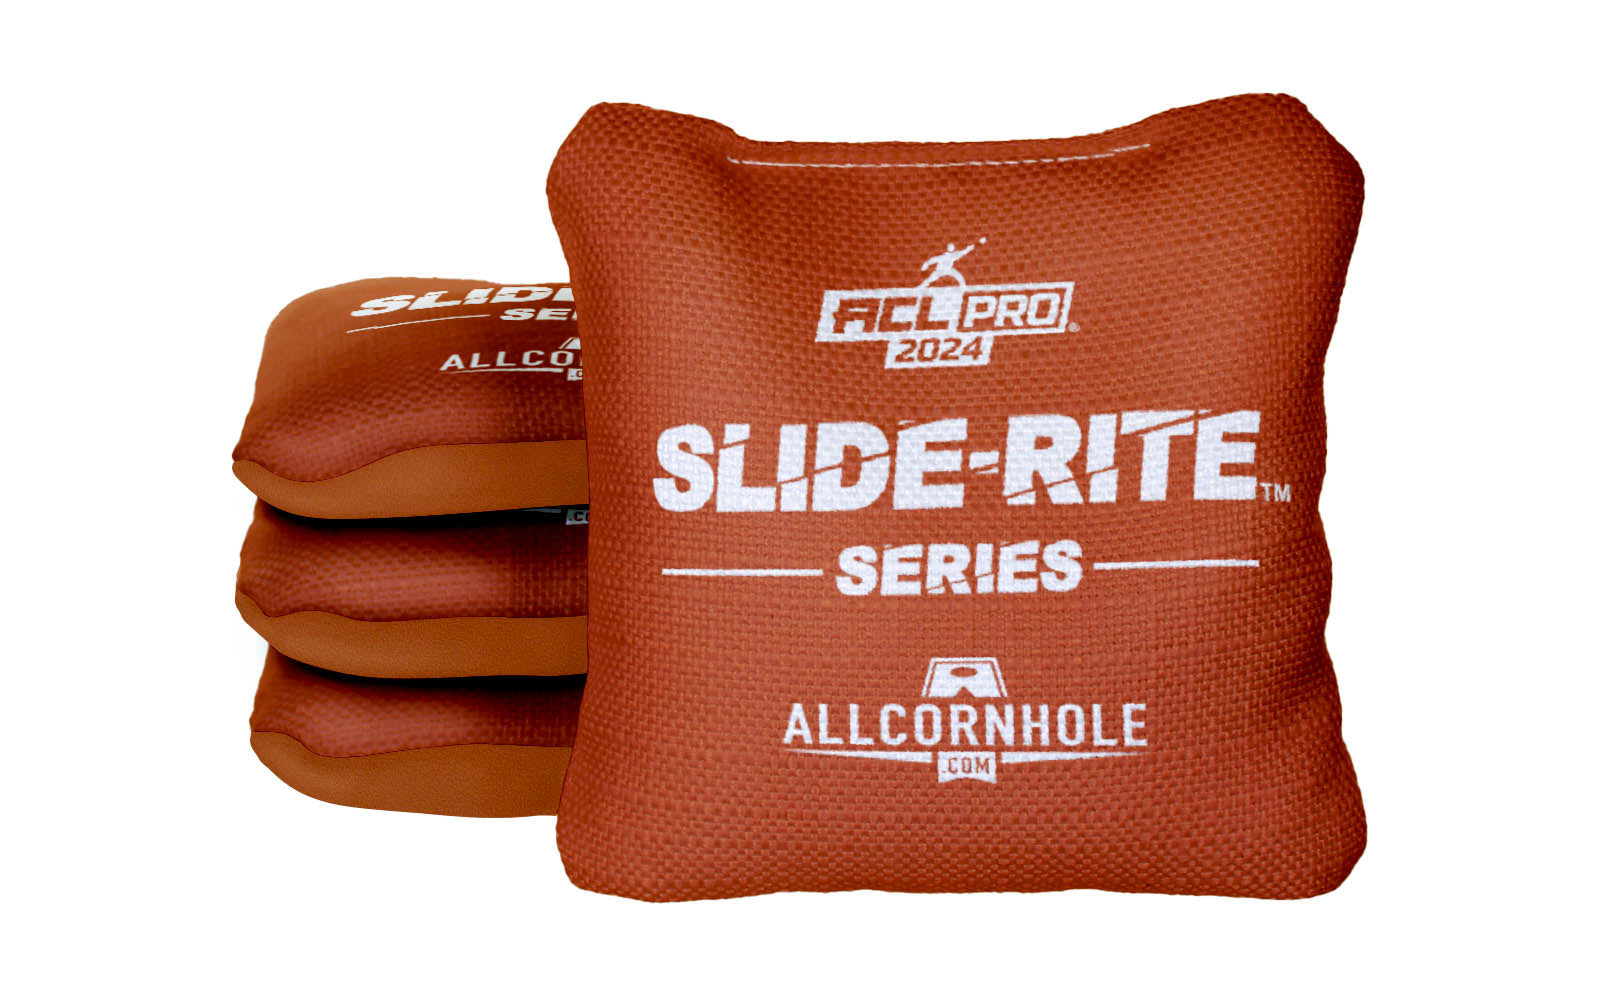 Officially Licensed Collegiate Cornhole Bags - AllCornhole Slide Rite - Set of 4 - University of Texas at Austin